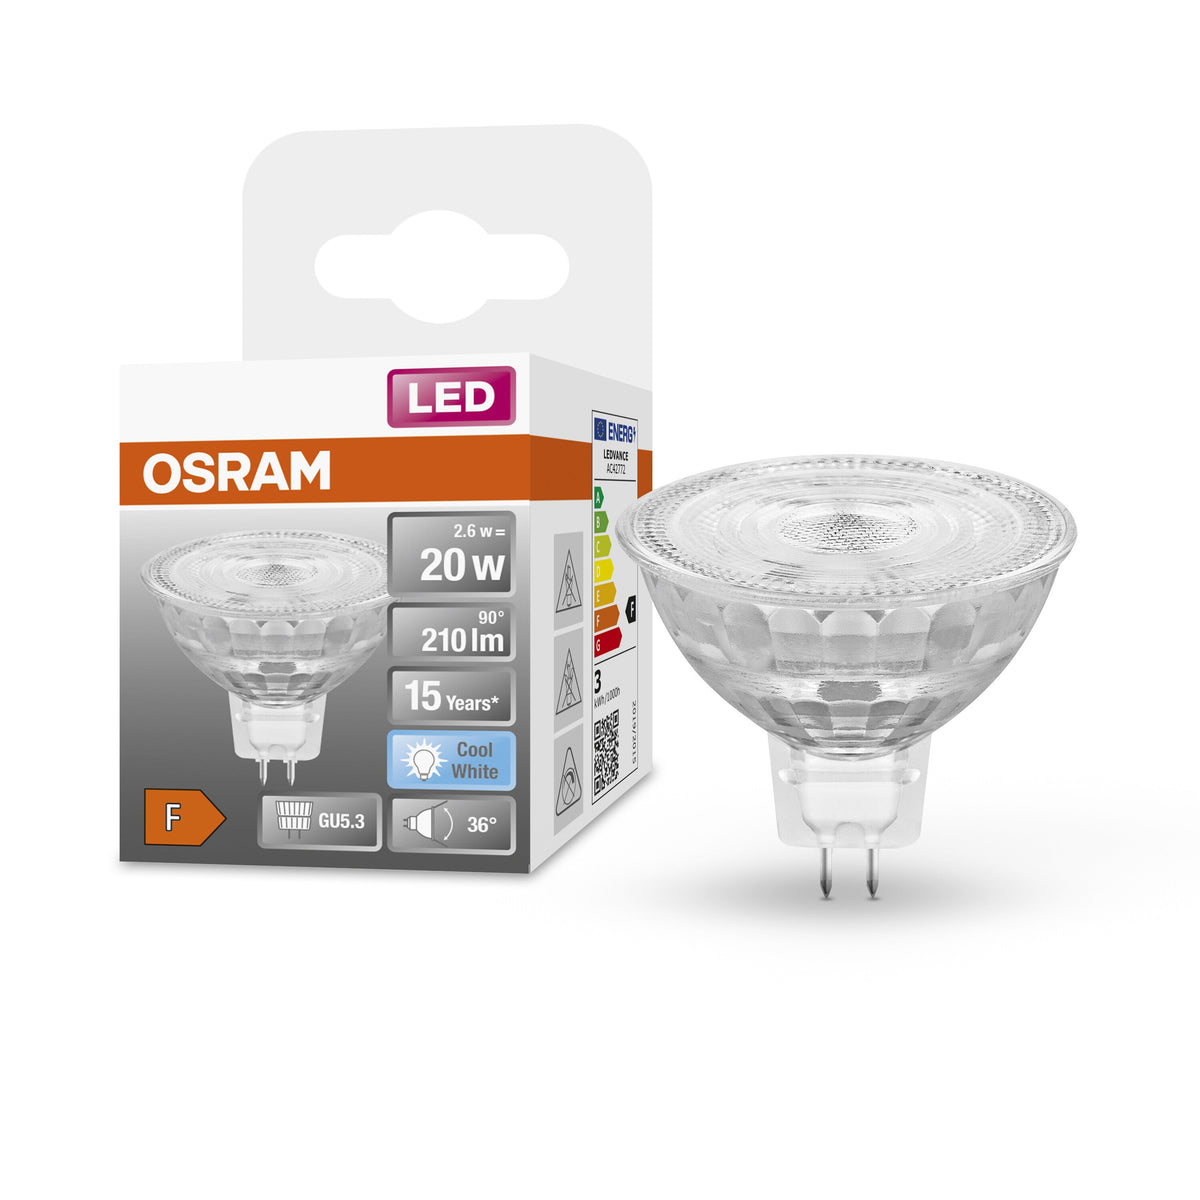 Lampe LED à réflecteur OSRAM MR16 avec culot GU5.3, blanc froid (4000K), spot en verre, 2.6W, remplacement de la lampe à réflecteur 20W, LED STAR MR16 12 V